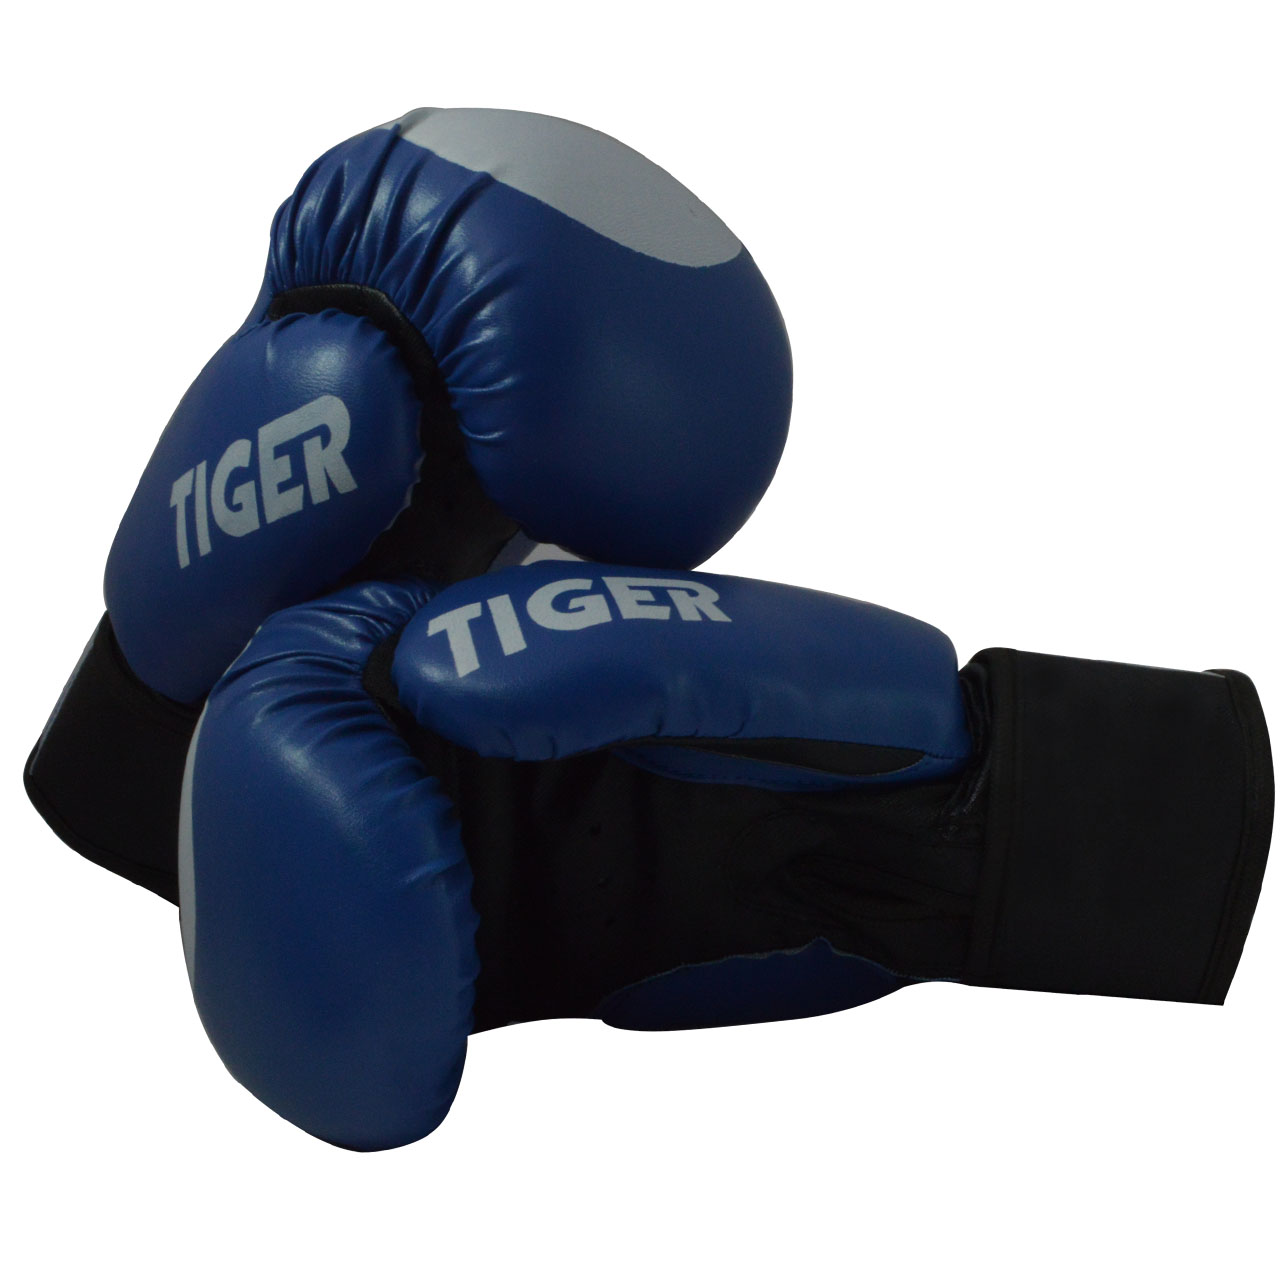 دستکش بوکس مدل Tiger 003